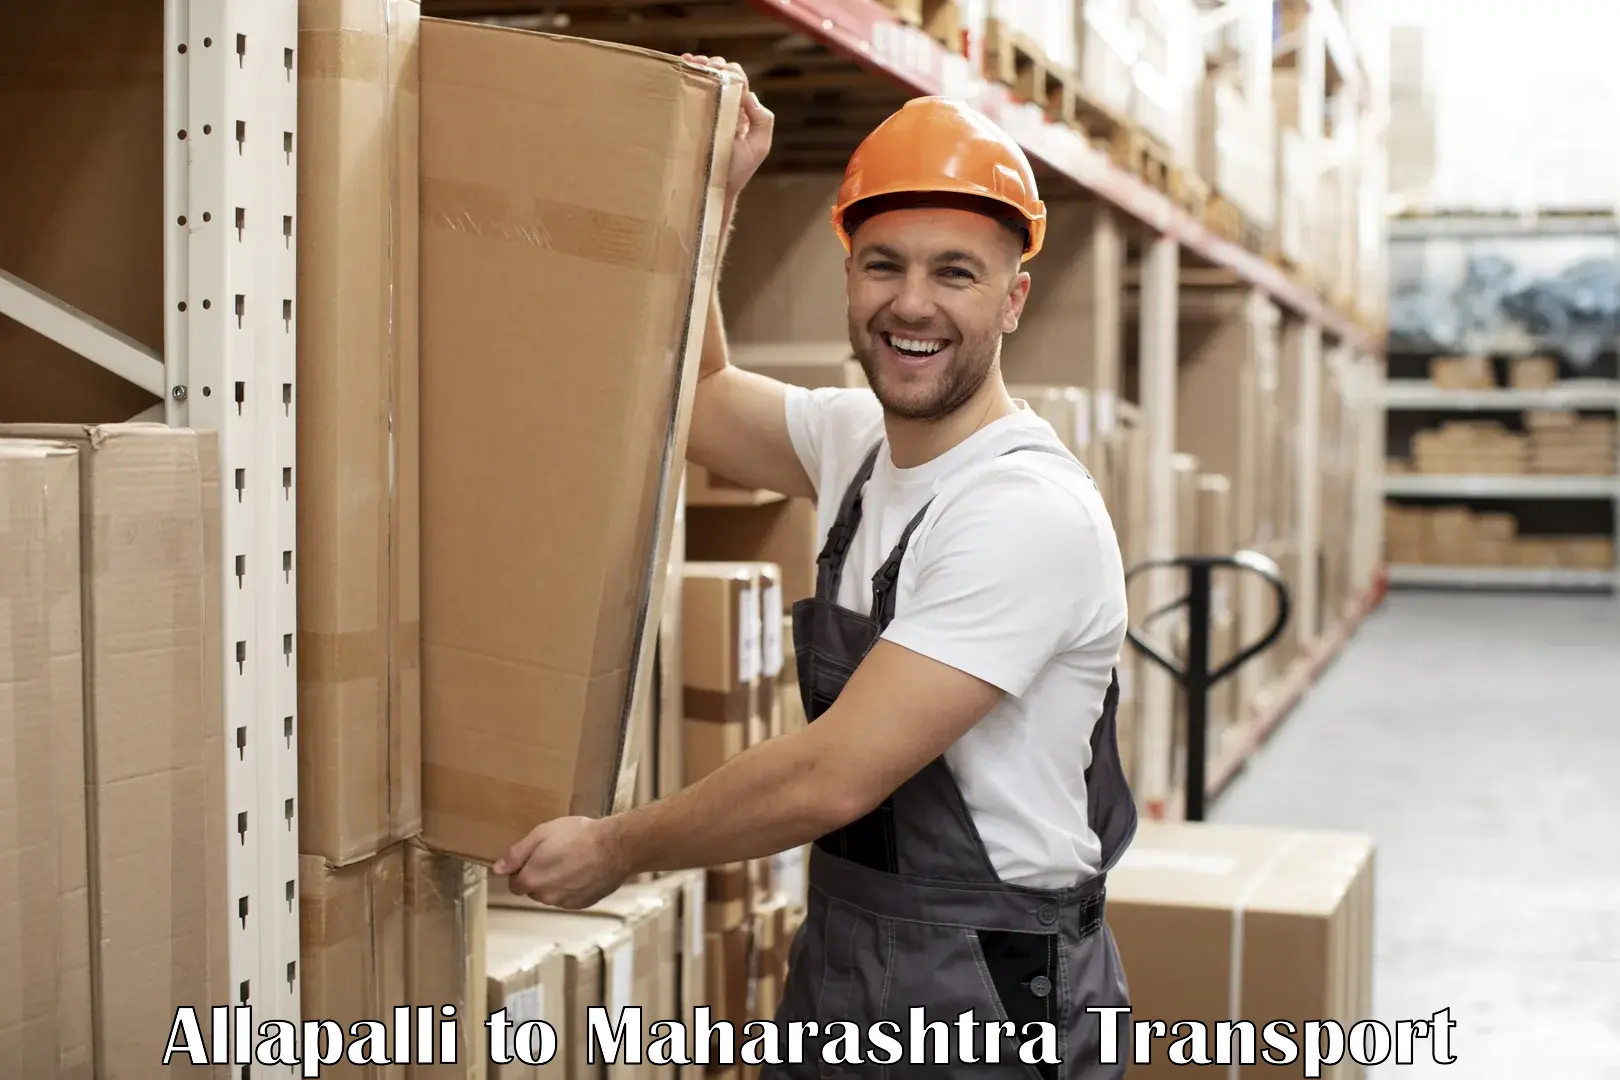 Truck transport companies in India Allapalli to IIT Mumbai